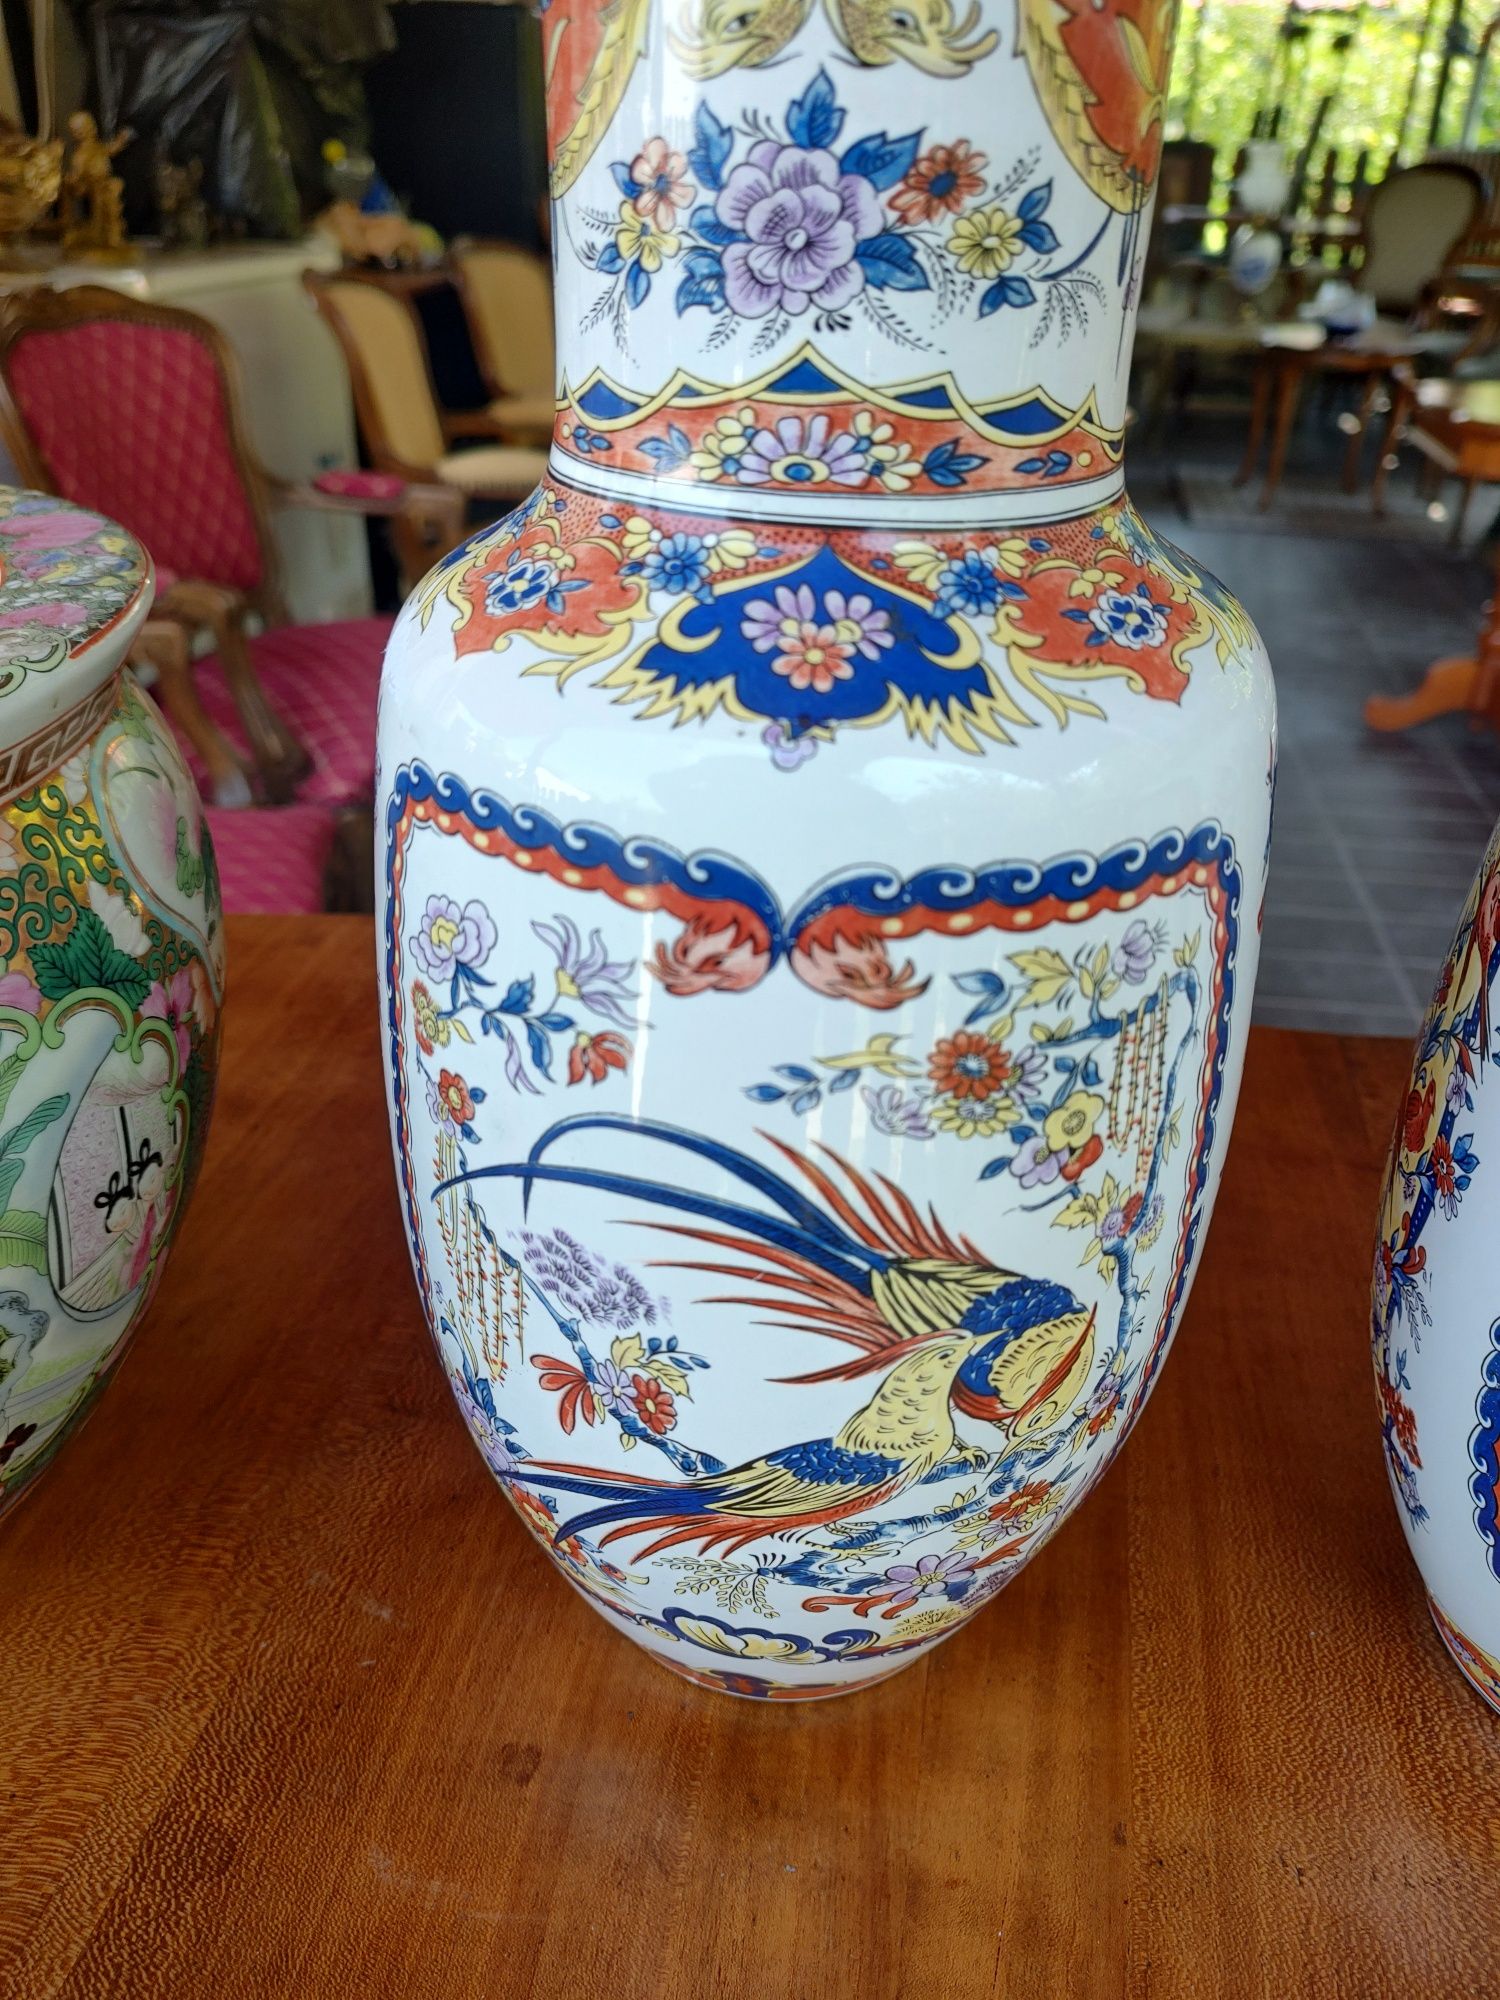 De vânzare pereche de vaze asiatice ștanțate, cu diferite peisaje.
Dim